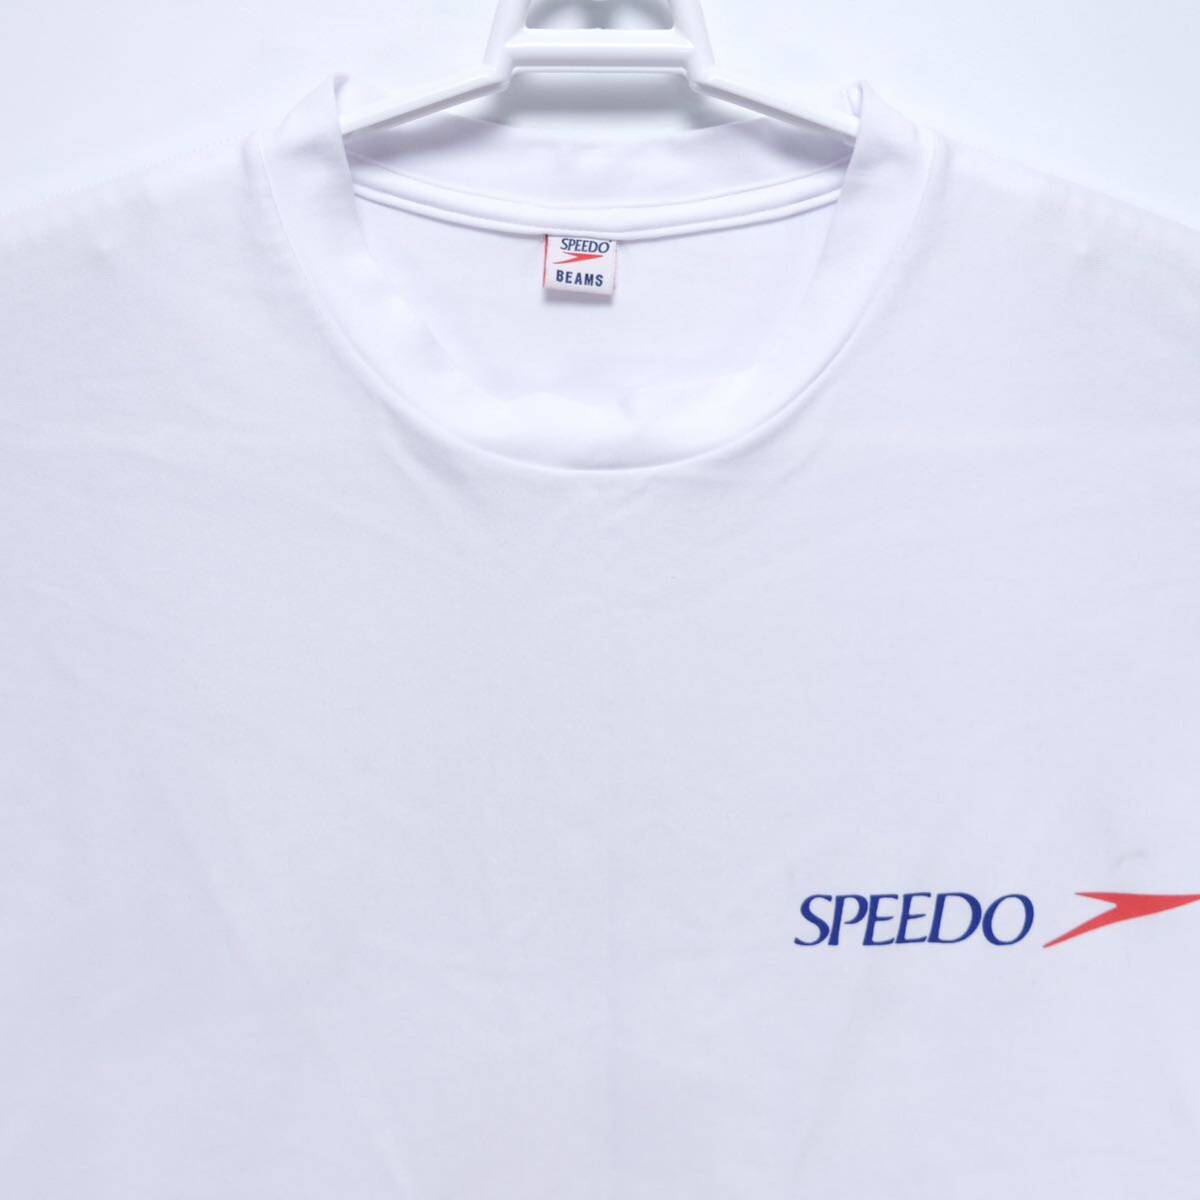 【送料無料】Speedo(スピード)×BEAMS(ビームス) Collaboration Collection 2020/別注 US RUSH Tシャツ/SA32054BE/ホワイト/Mサイズ_画像4